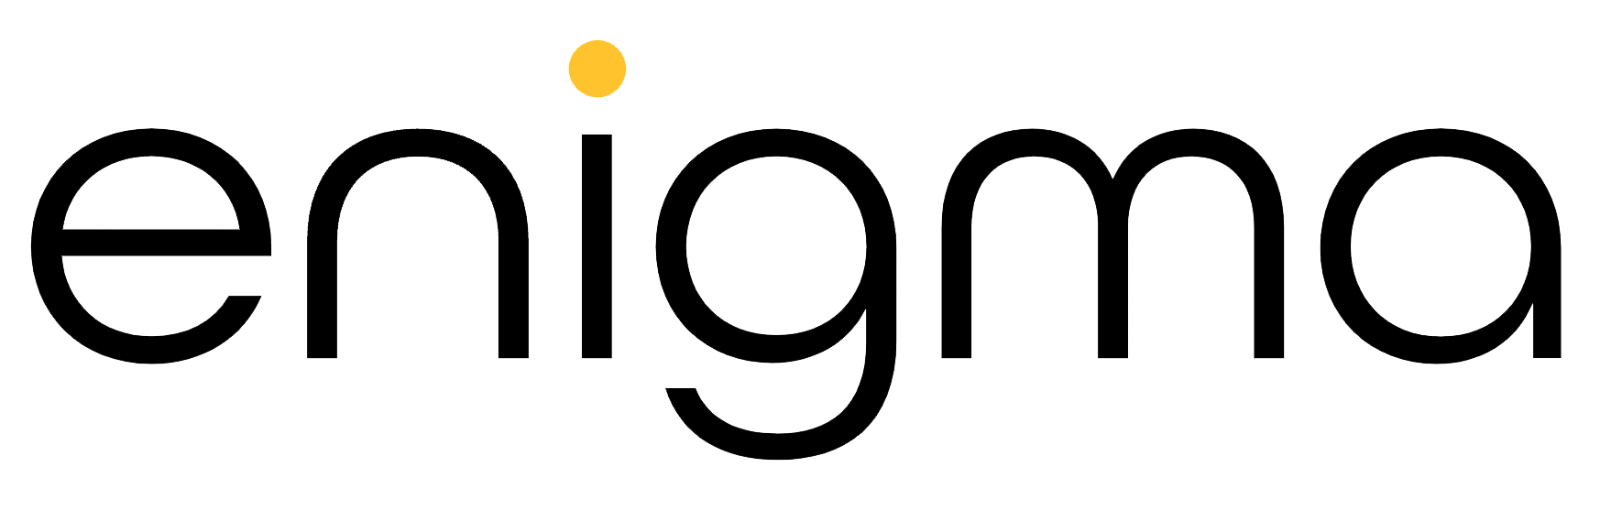 Enigma Lighting's logo.